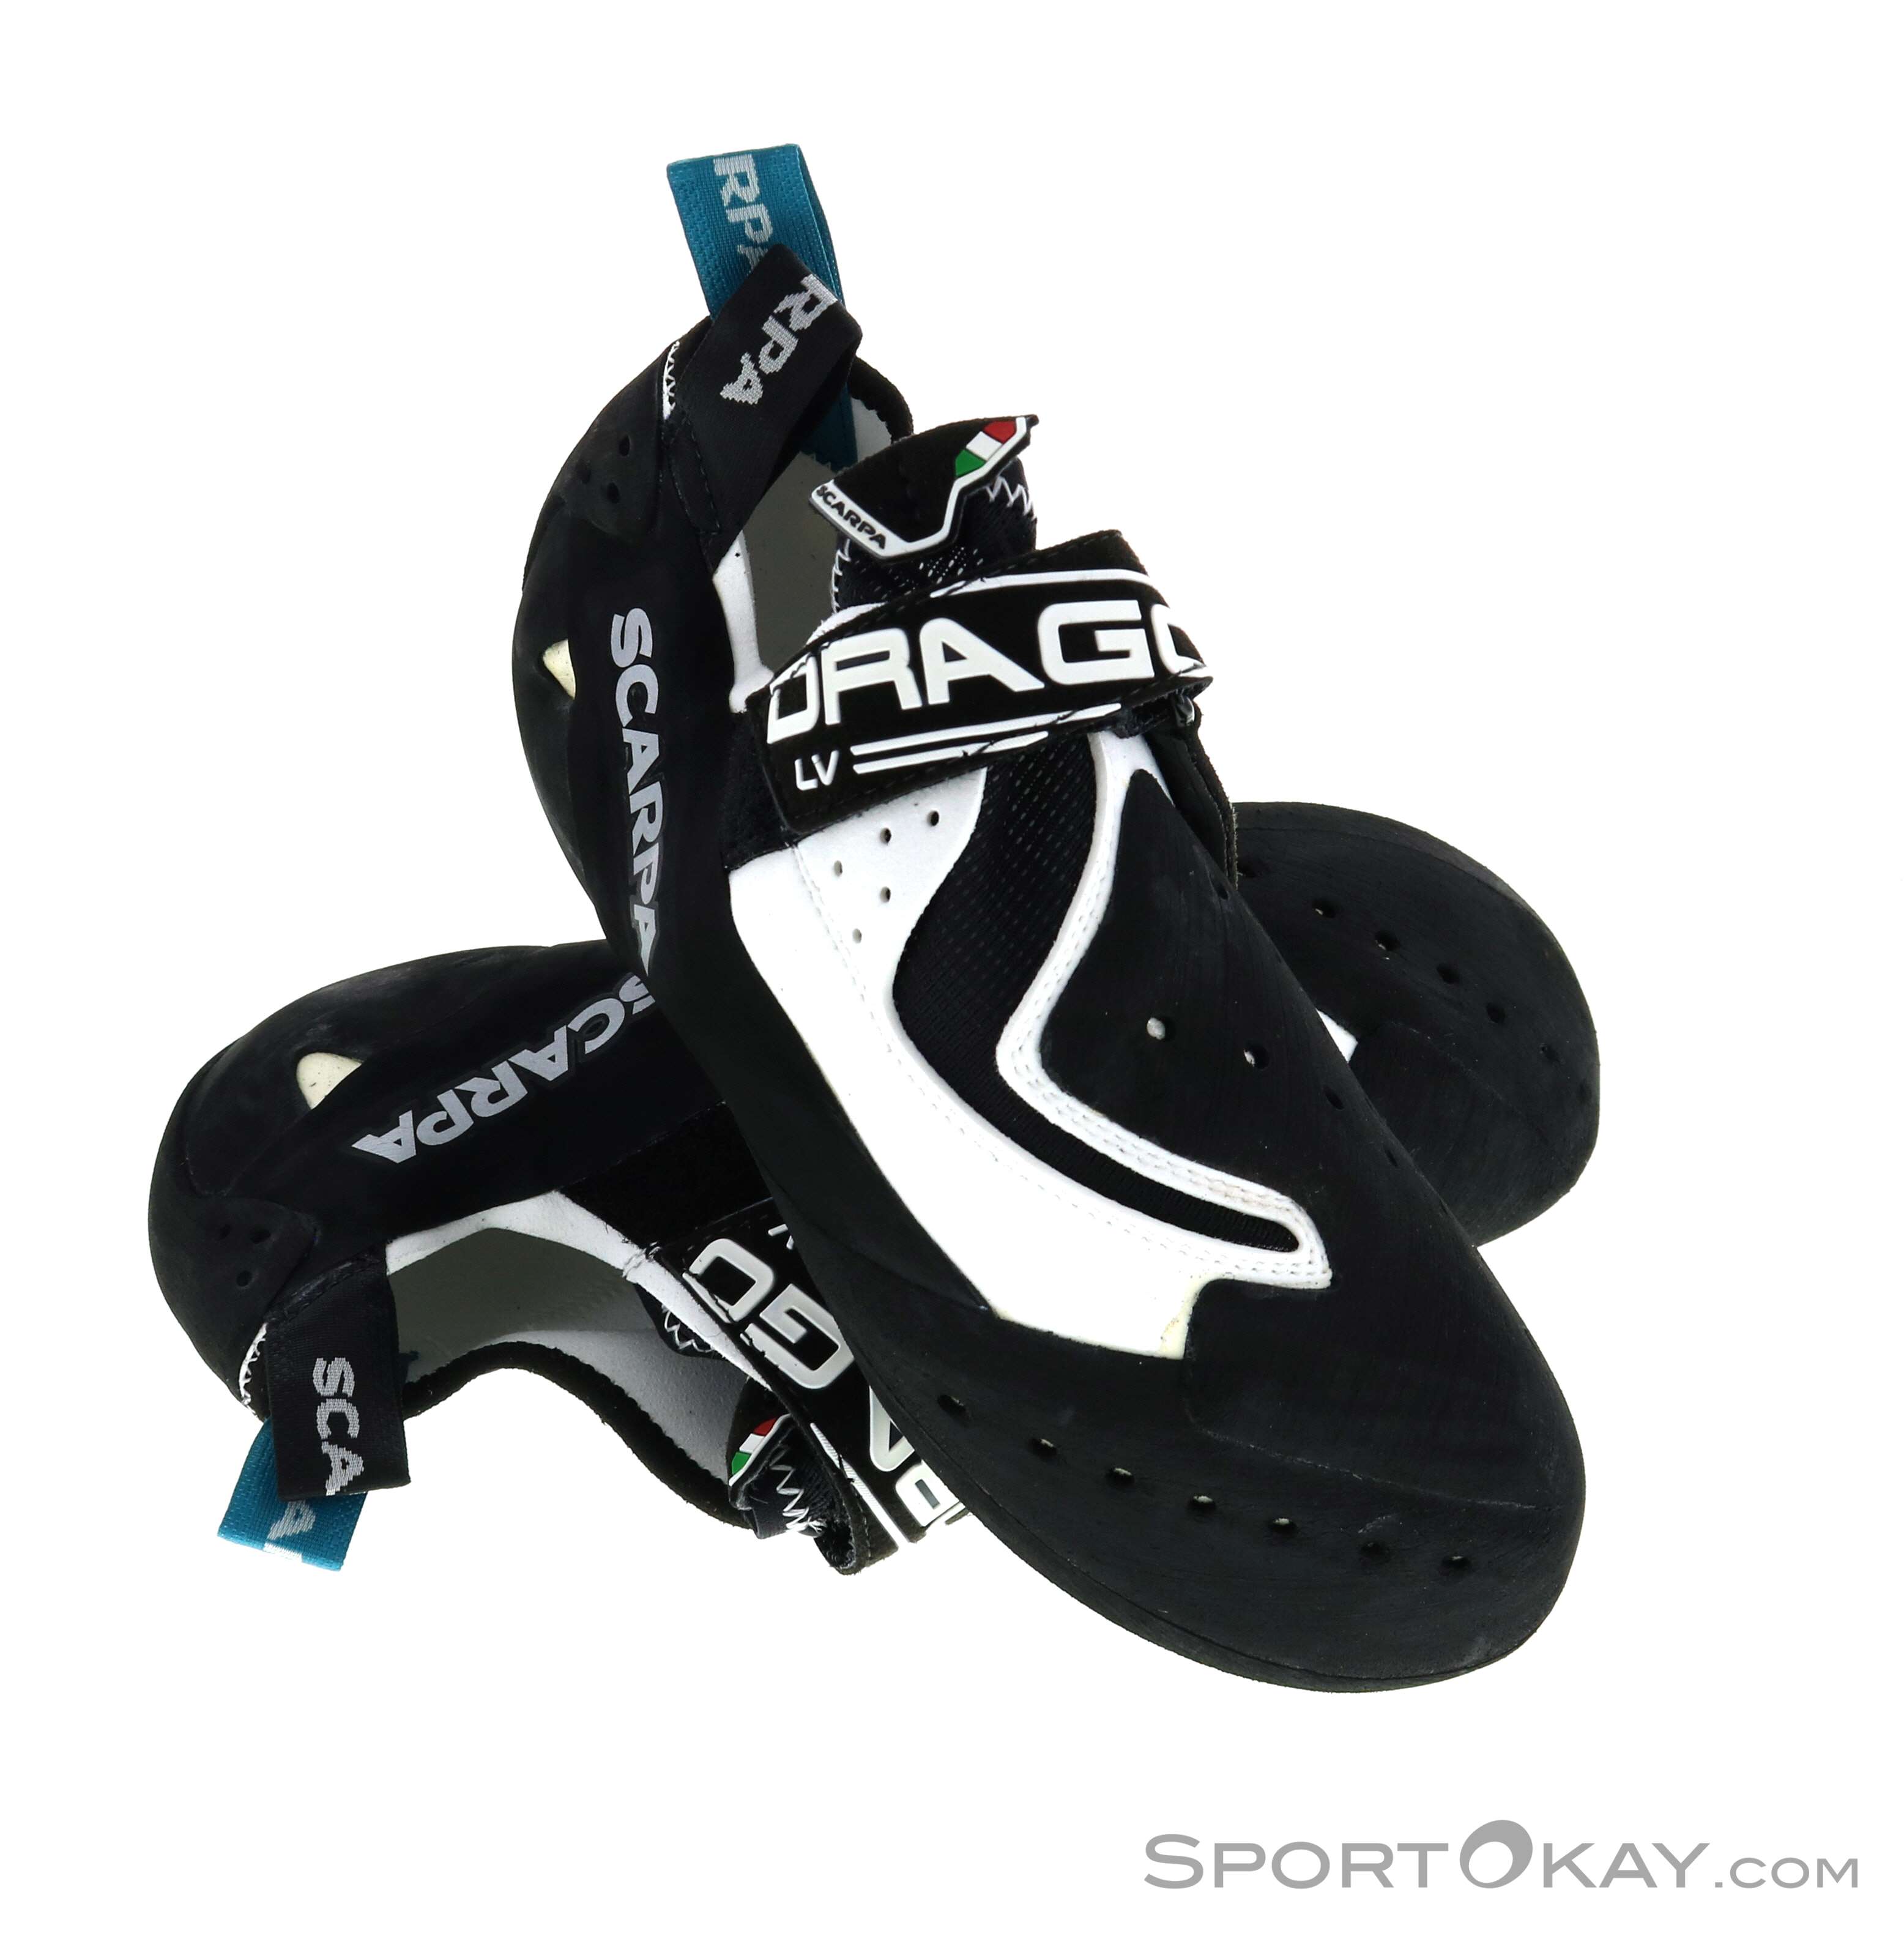 Scarpa Drago LV Climbing Shoes : Snowleader